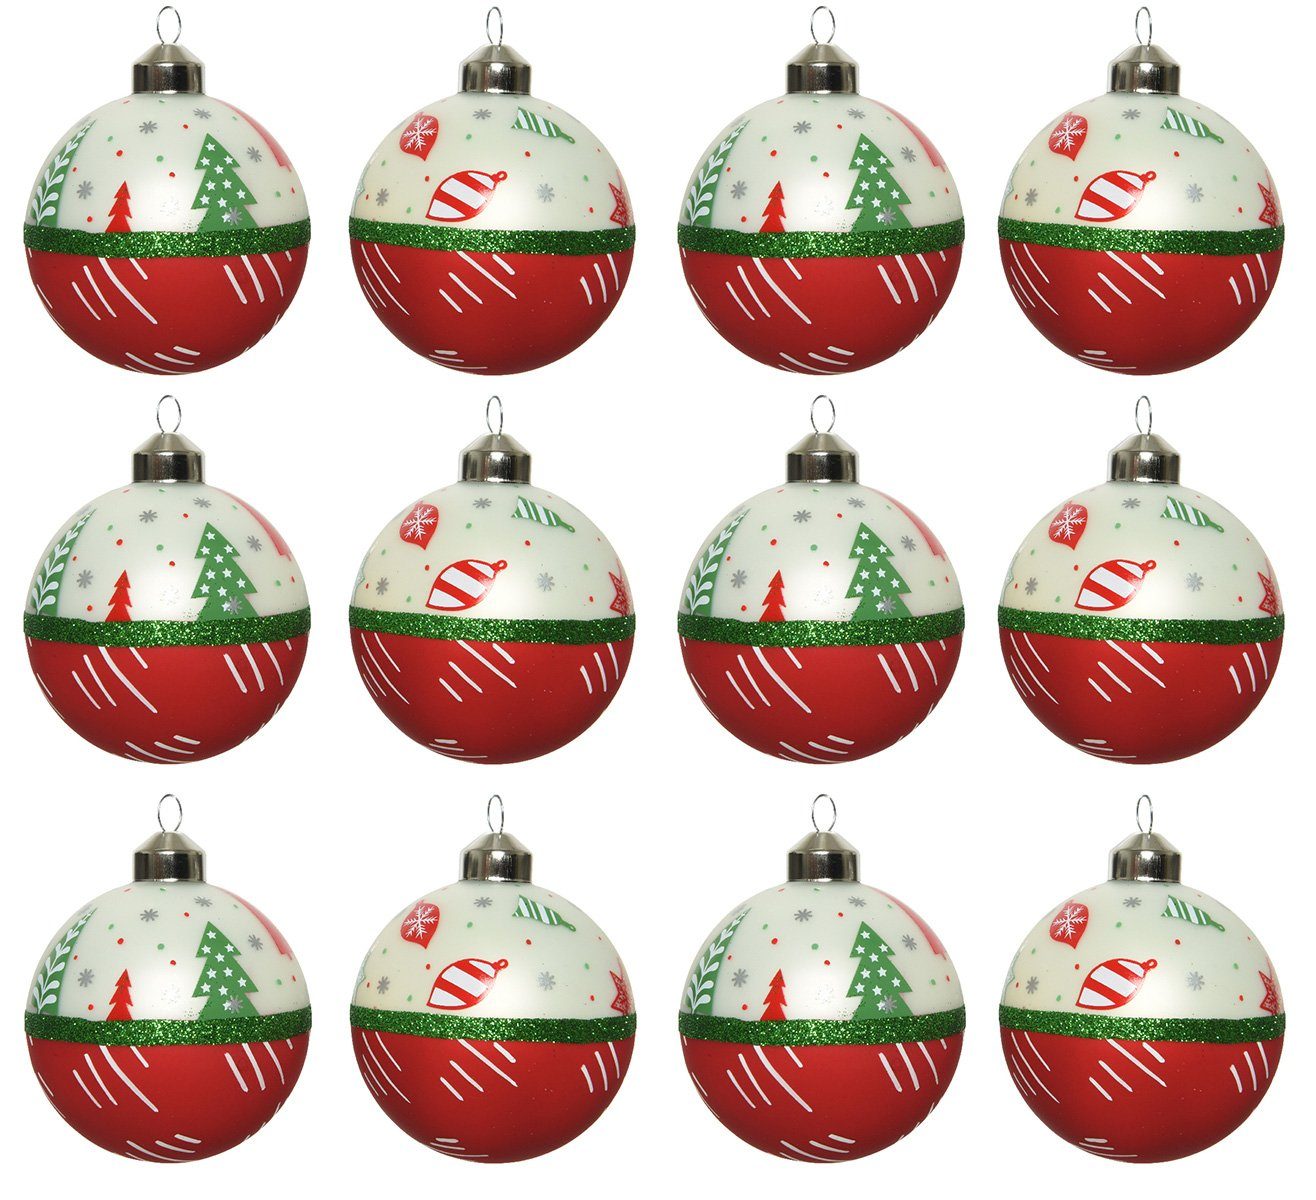 Decoris season decorations Weihnachtsbaumkugel, Weihnachtskugeln Glas 8cm Motiv / Muster 12er Set rot / weiß / grün